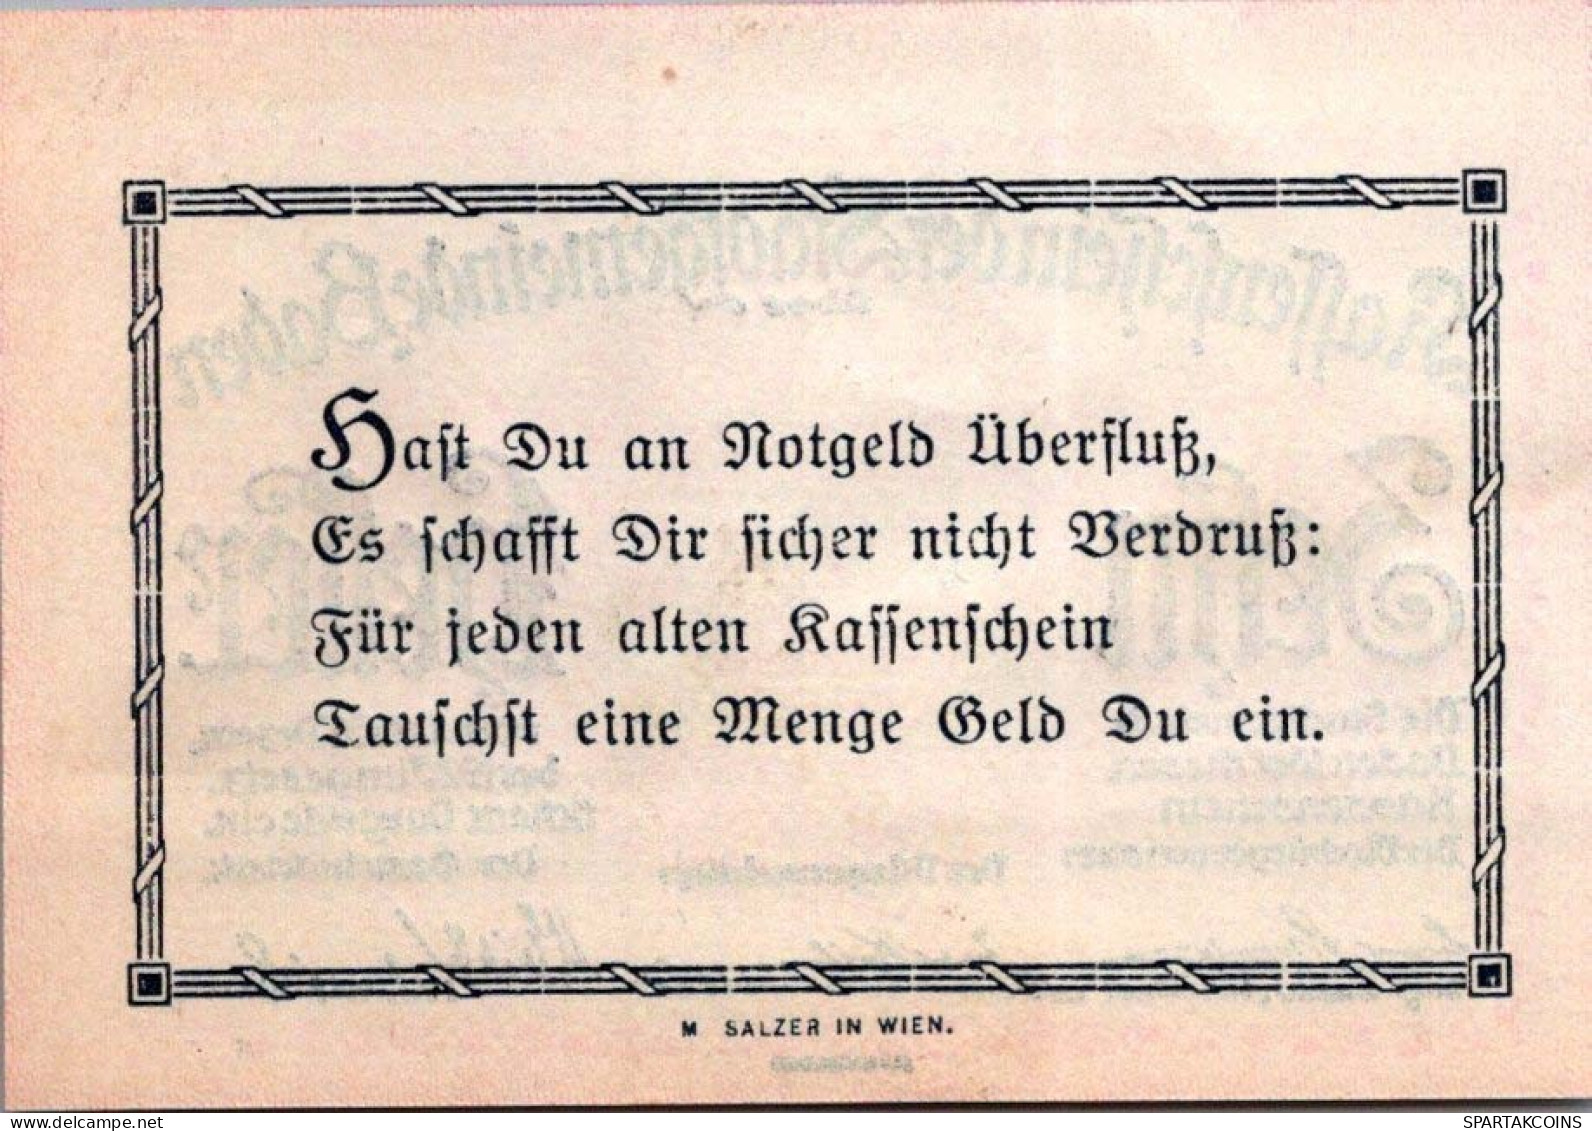 10 HELLER 1920 Stadt BADEN BEI WIEN Niedrigeren Österreich Notgeld Papiergeld Banknote #PG520 - [11] Local Banknote Issues